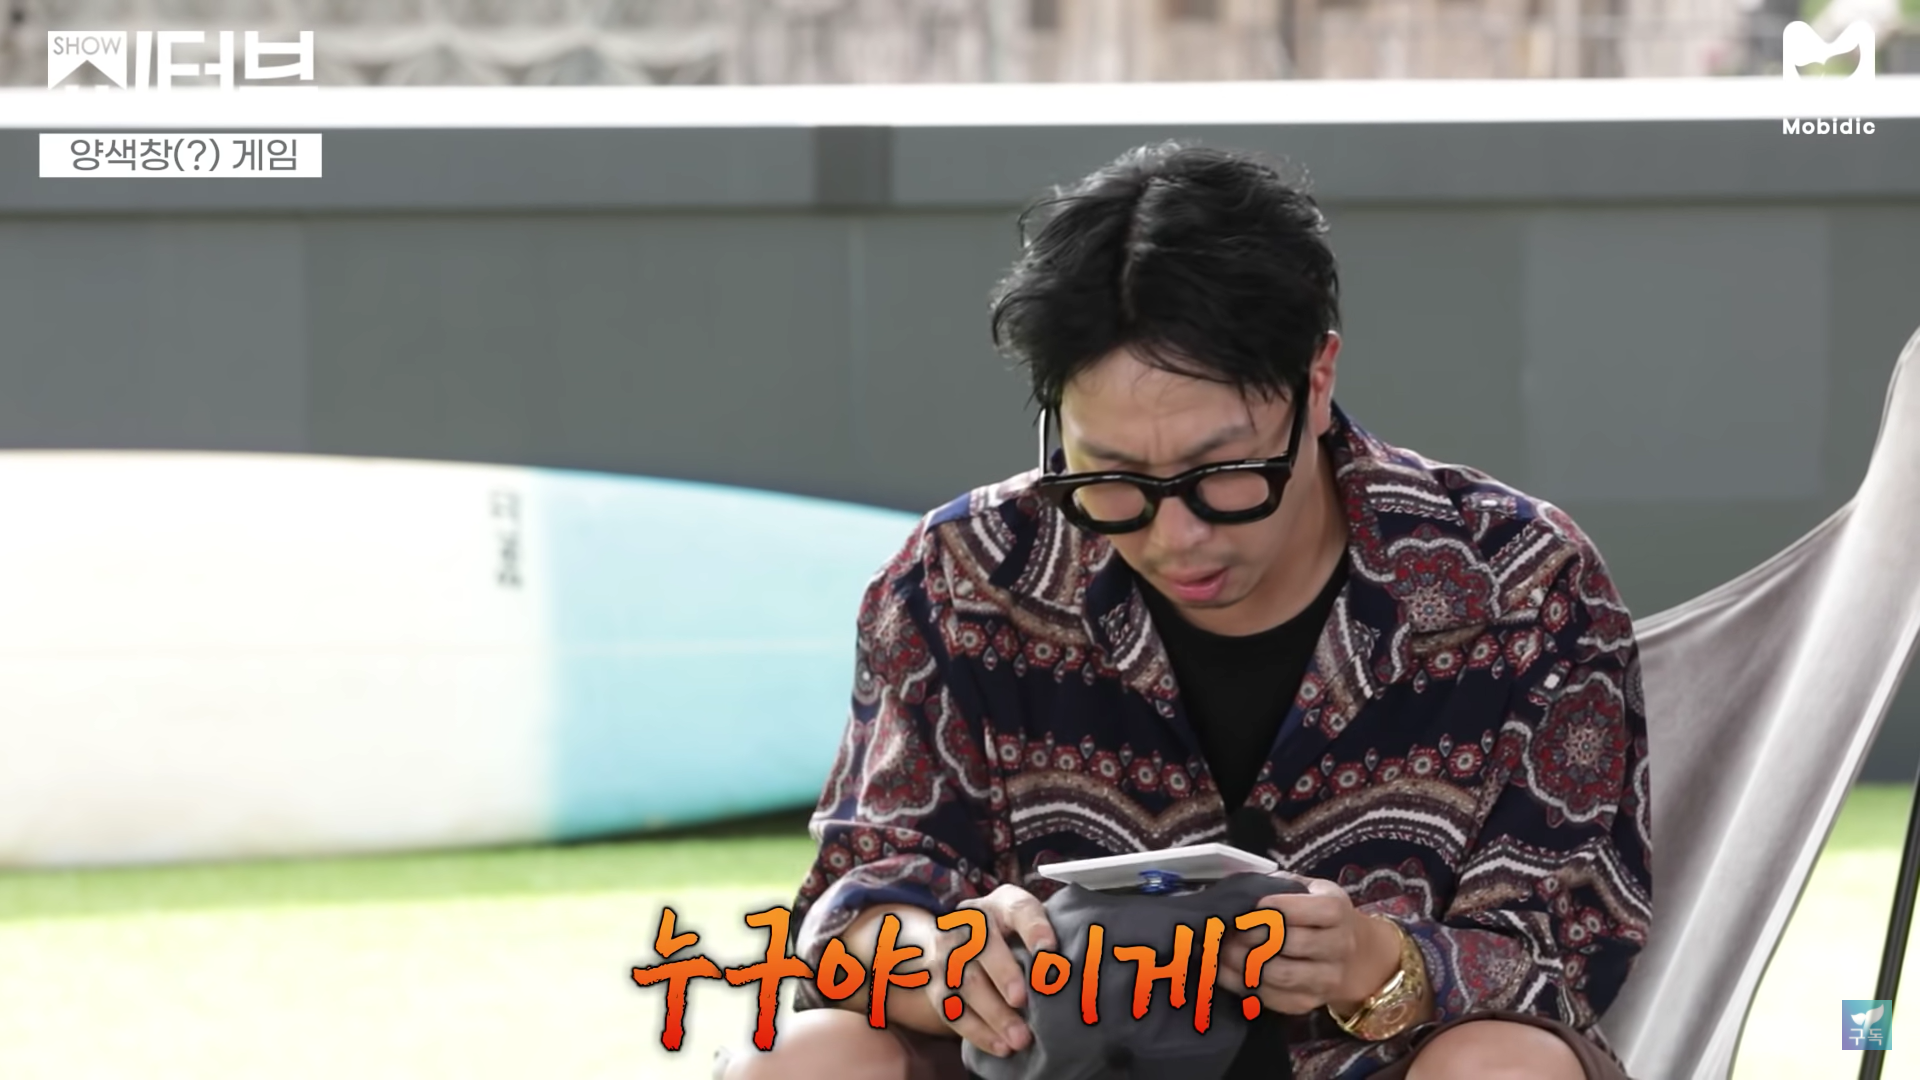 korean texting slang - ㅁㄹ